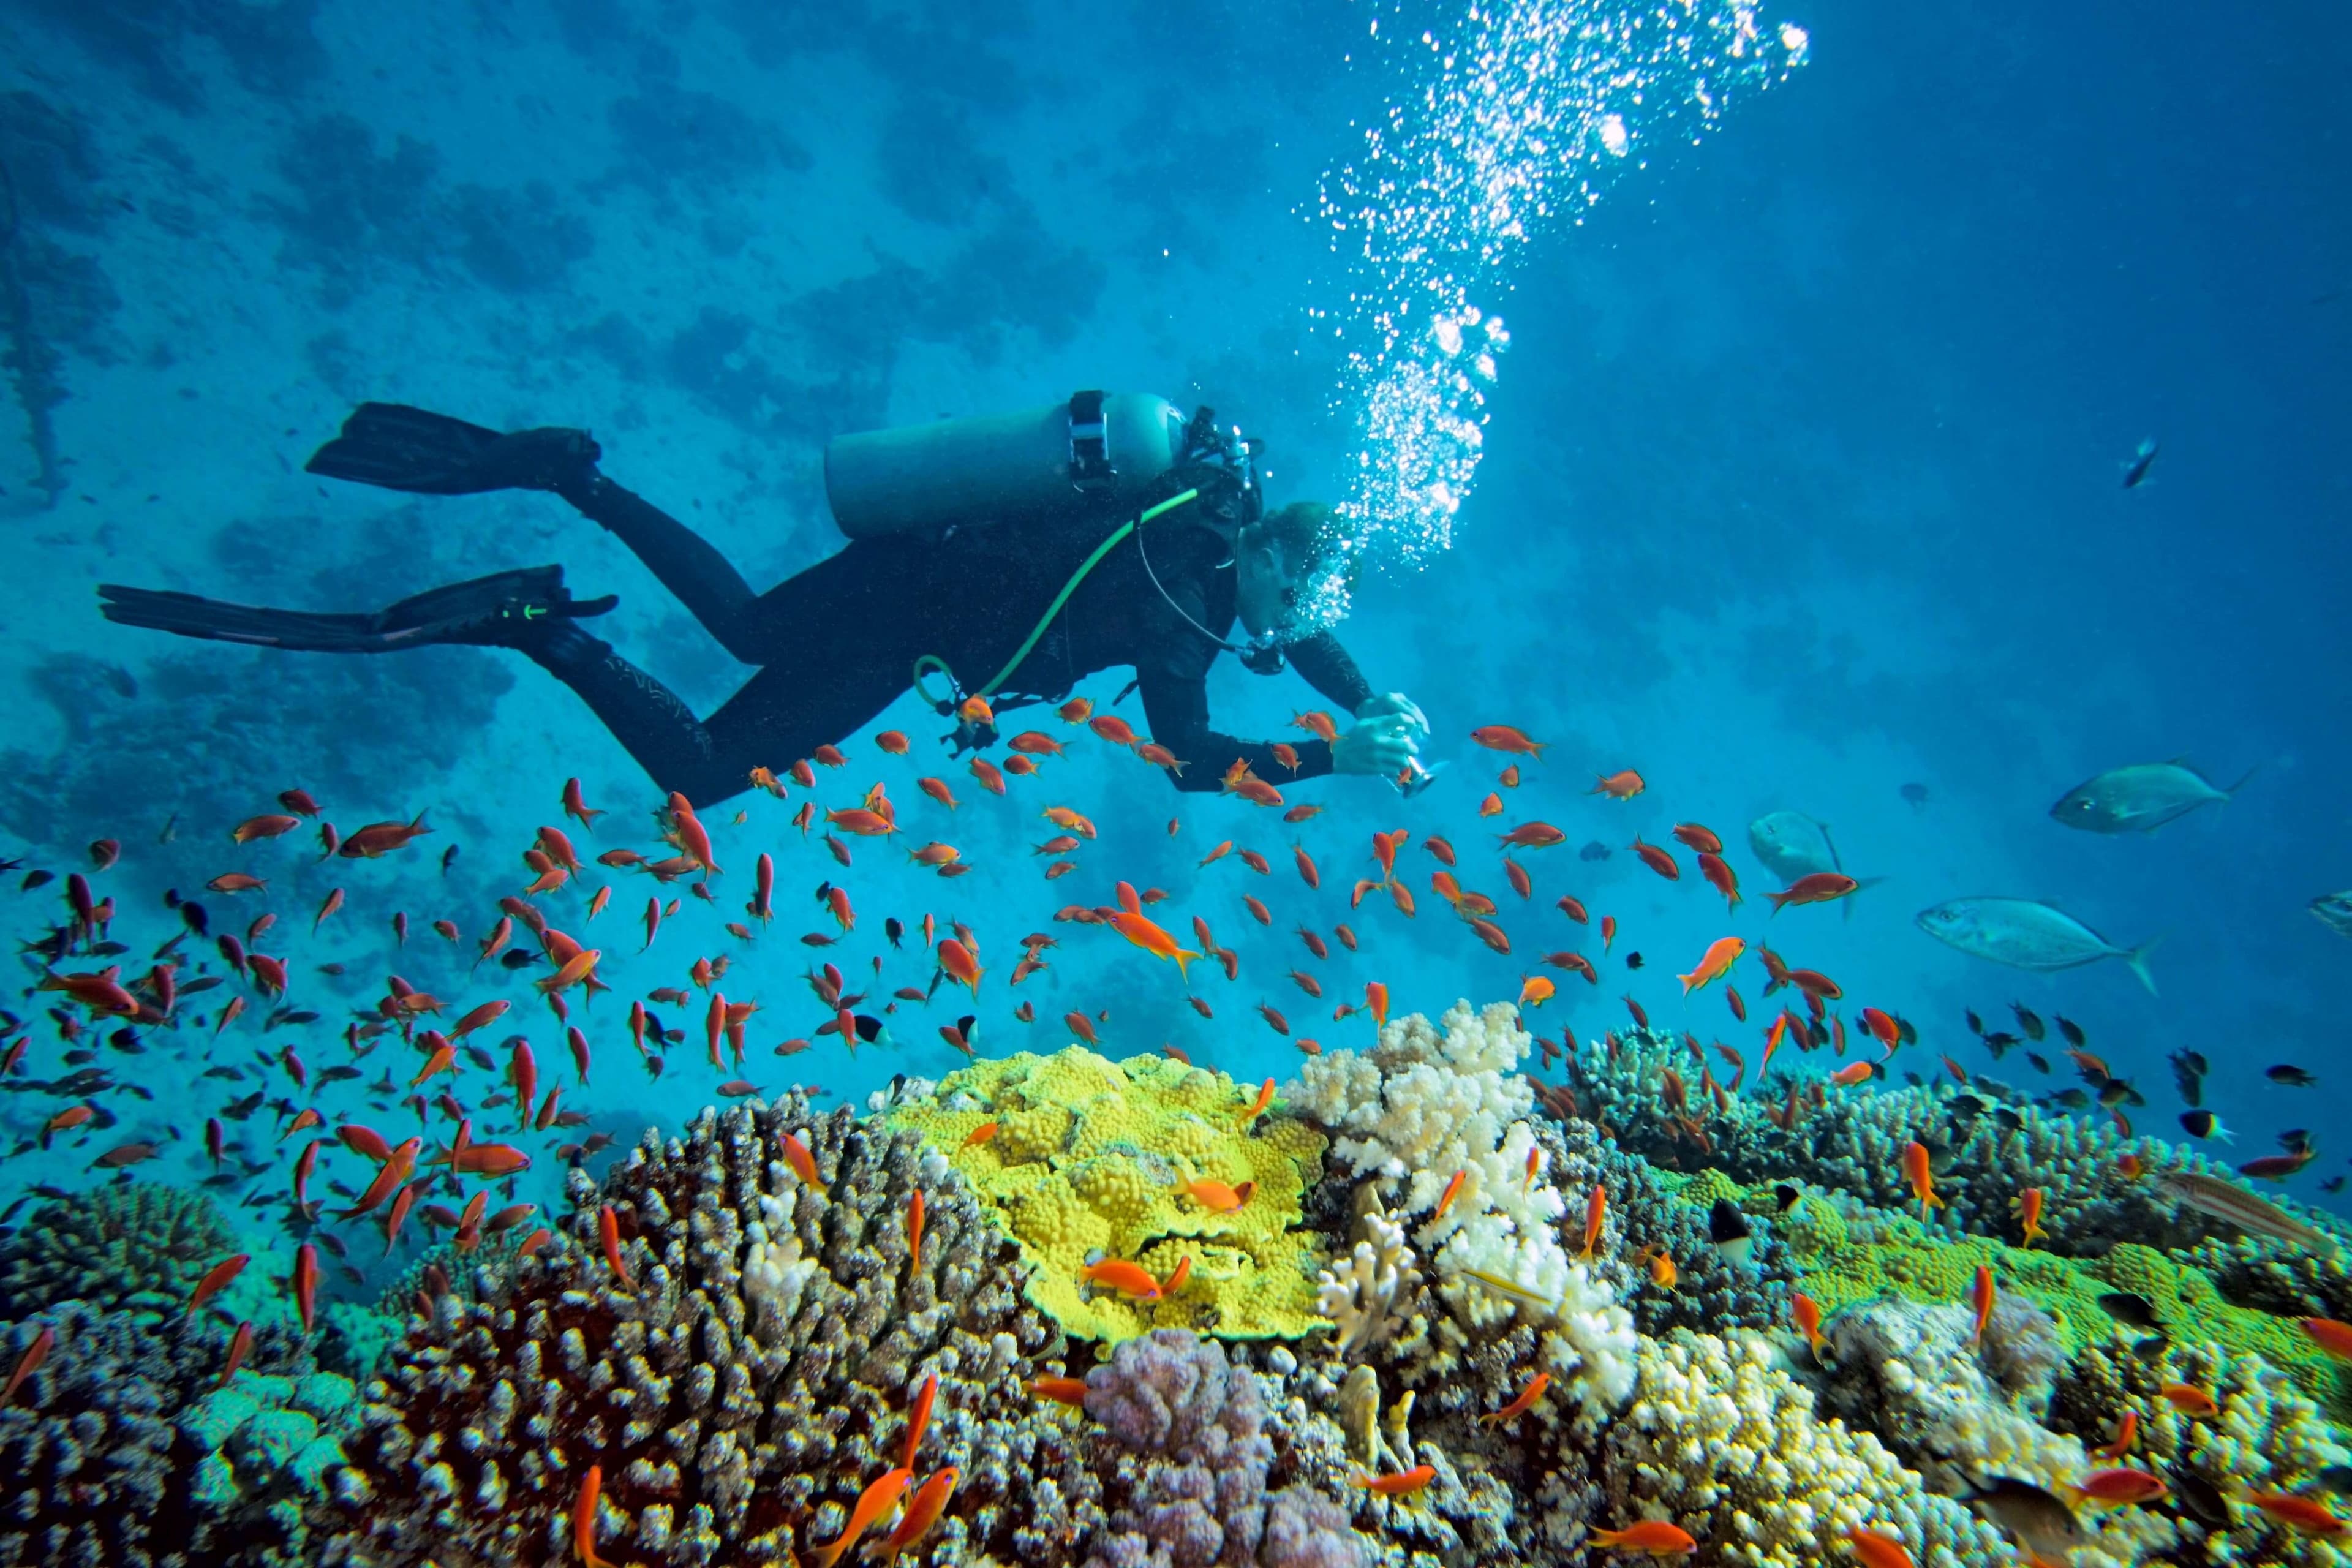 غواص يغوص بجمال تحت الماء مع مجموعة من الأسماك في بحر نيجومبو في سريلانكا